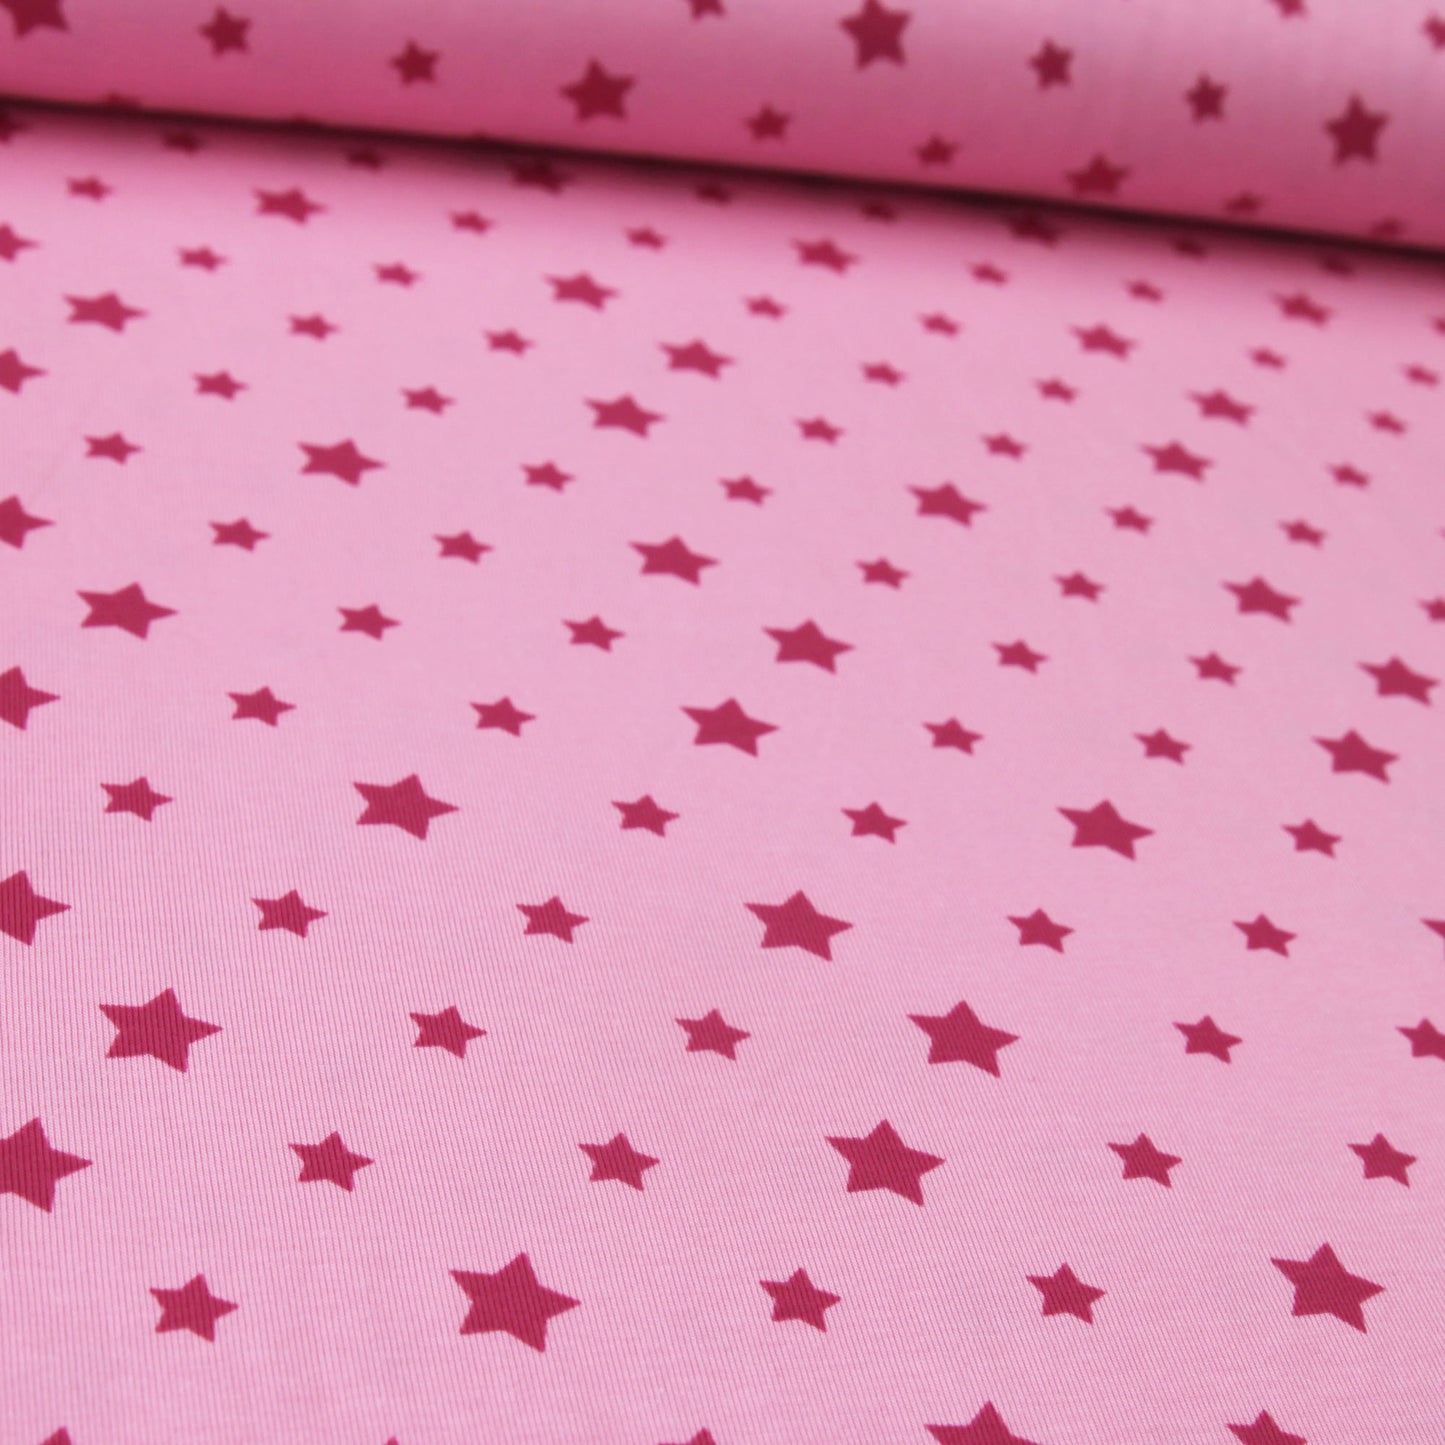 Baumwolljersey "Sterne groß und klein" - Jersey Stoff rosa fuchsiaJersey BedrucktStoffe KudellinoStoffe Kudellino